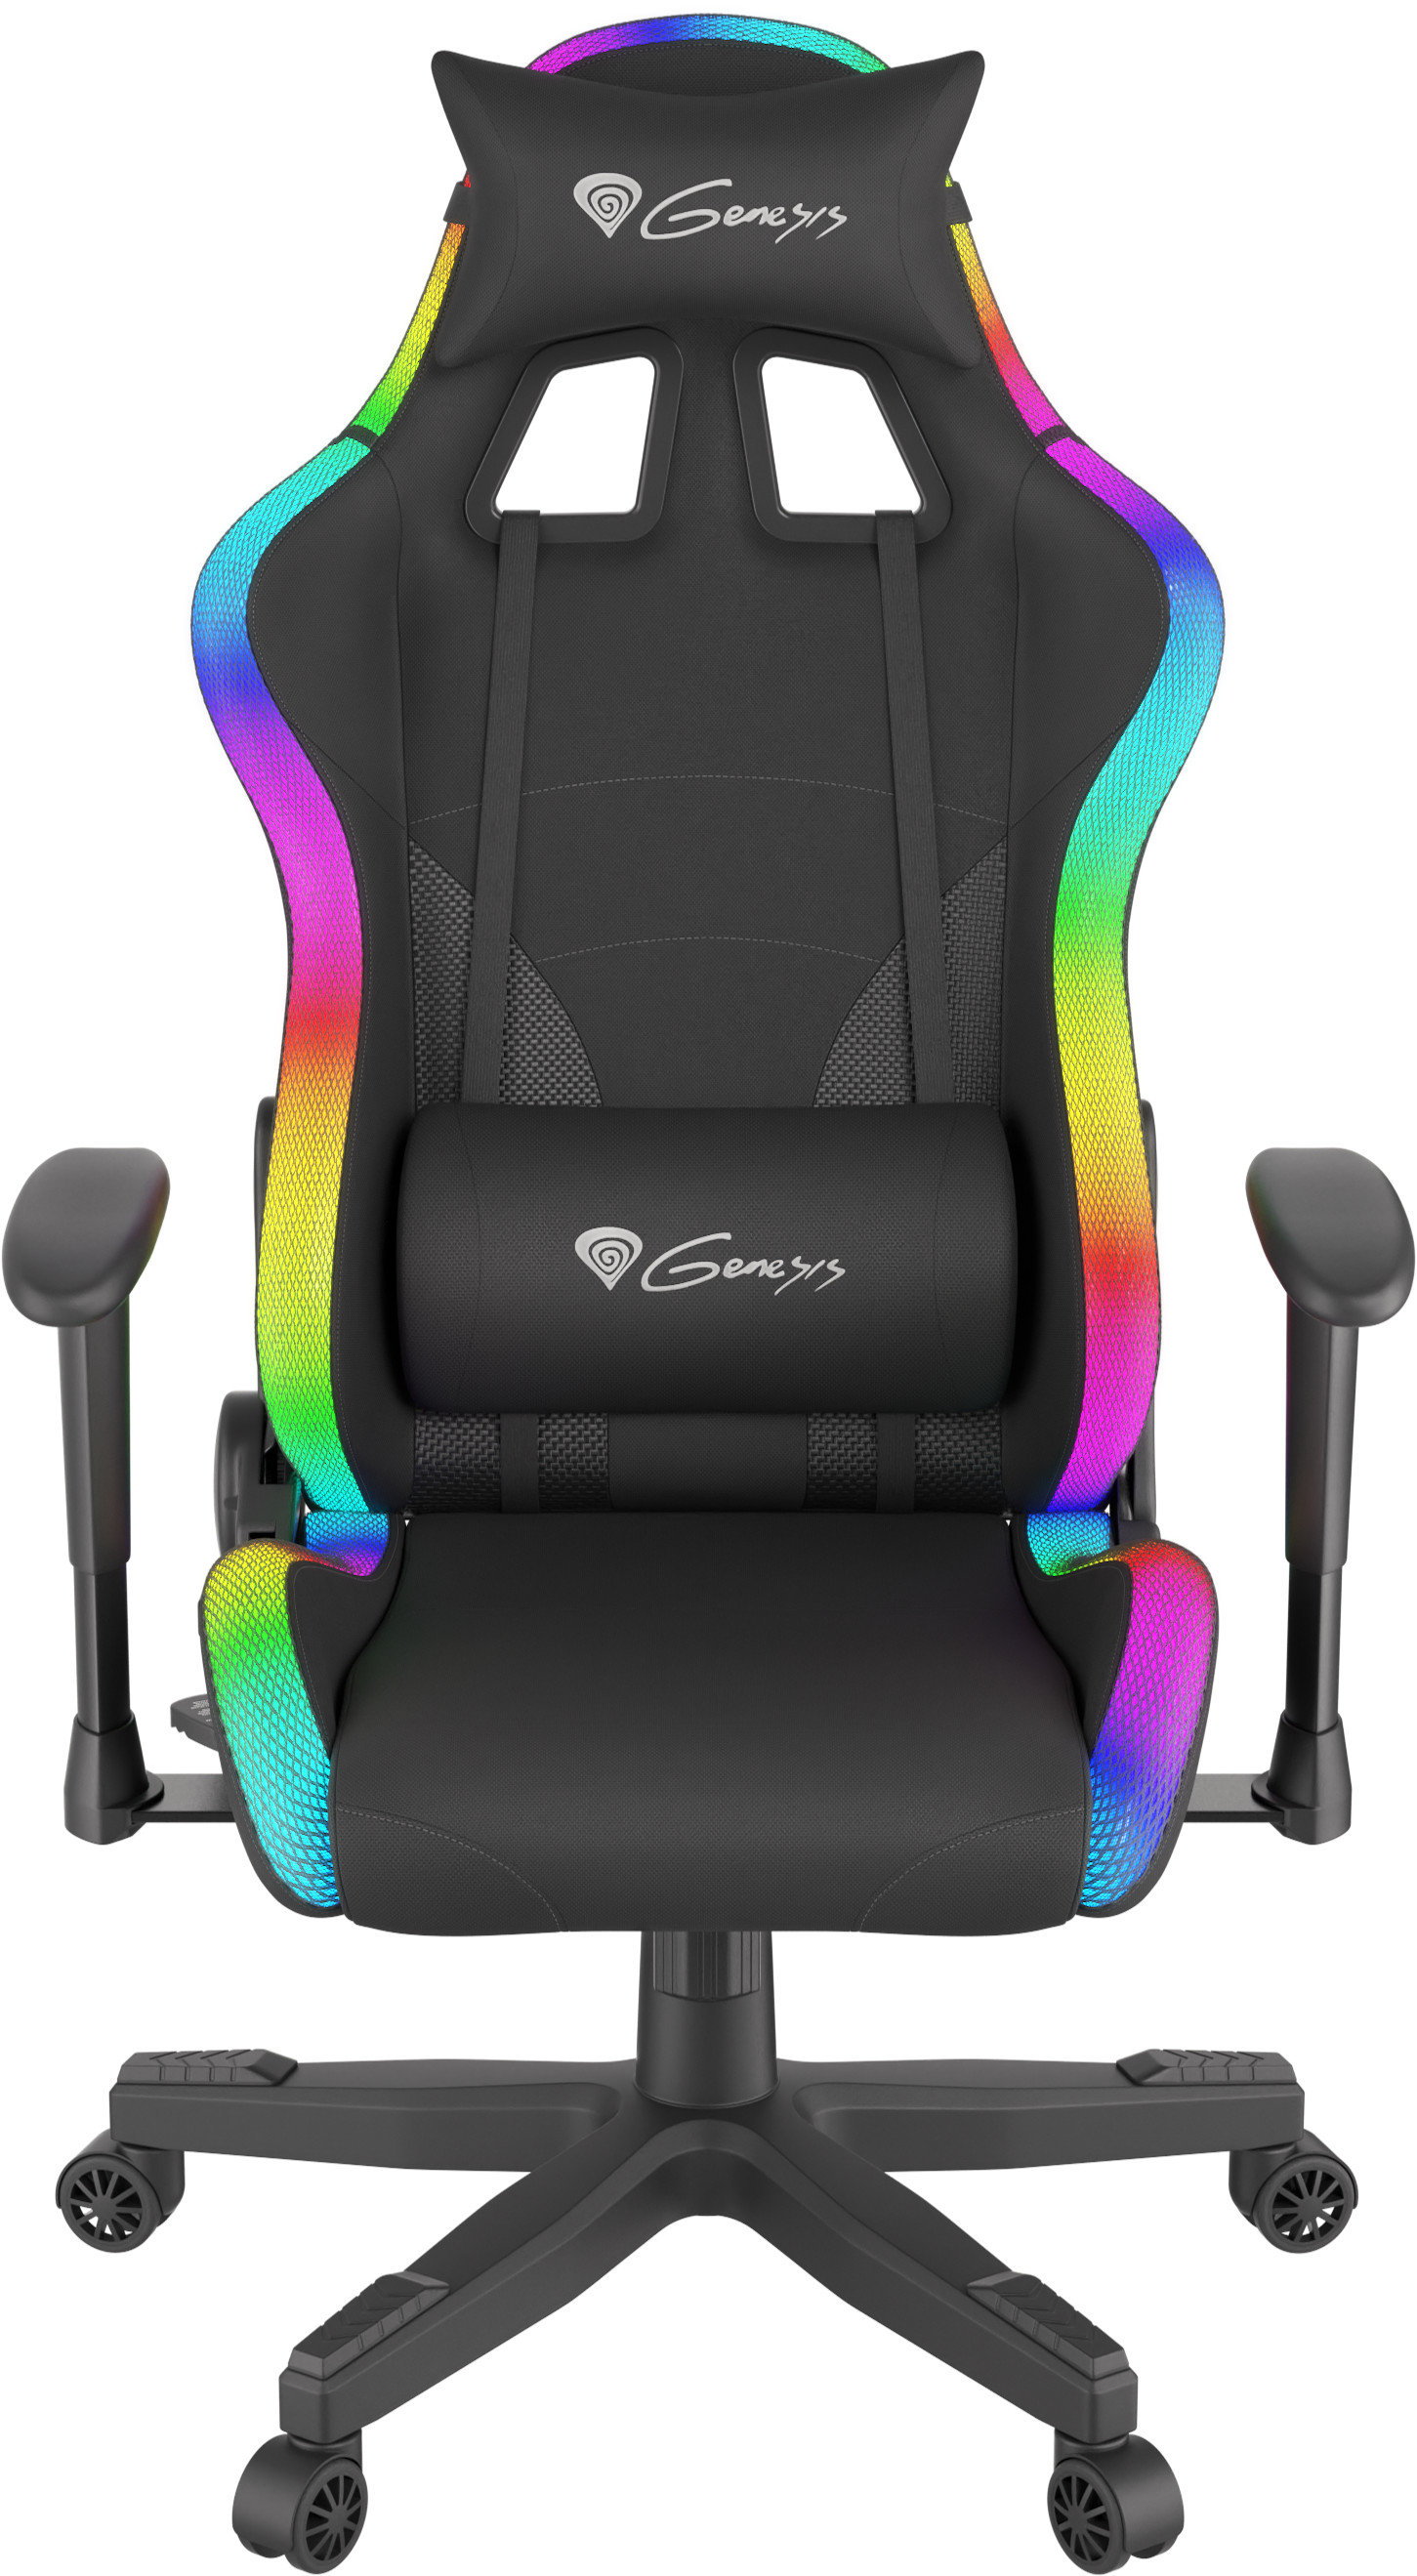 GENESIS Trit 600 RGB Czarny Fotel - niskie ceny i opinie w Media Expert